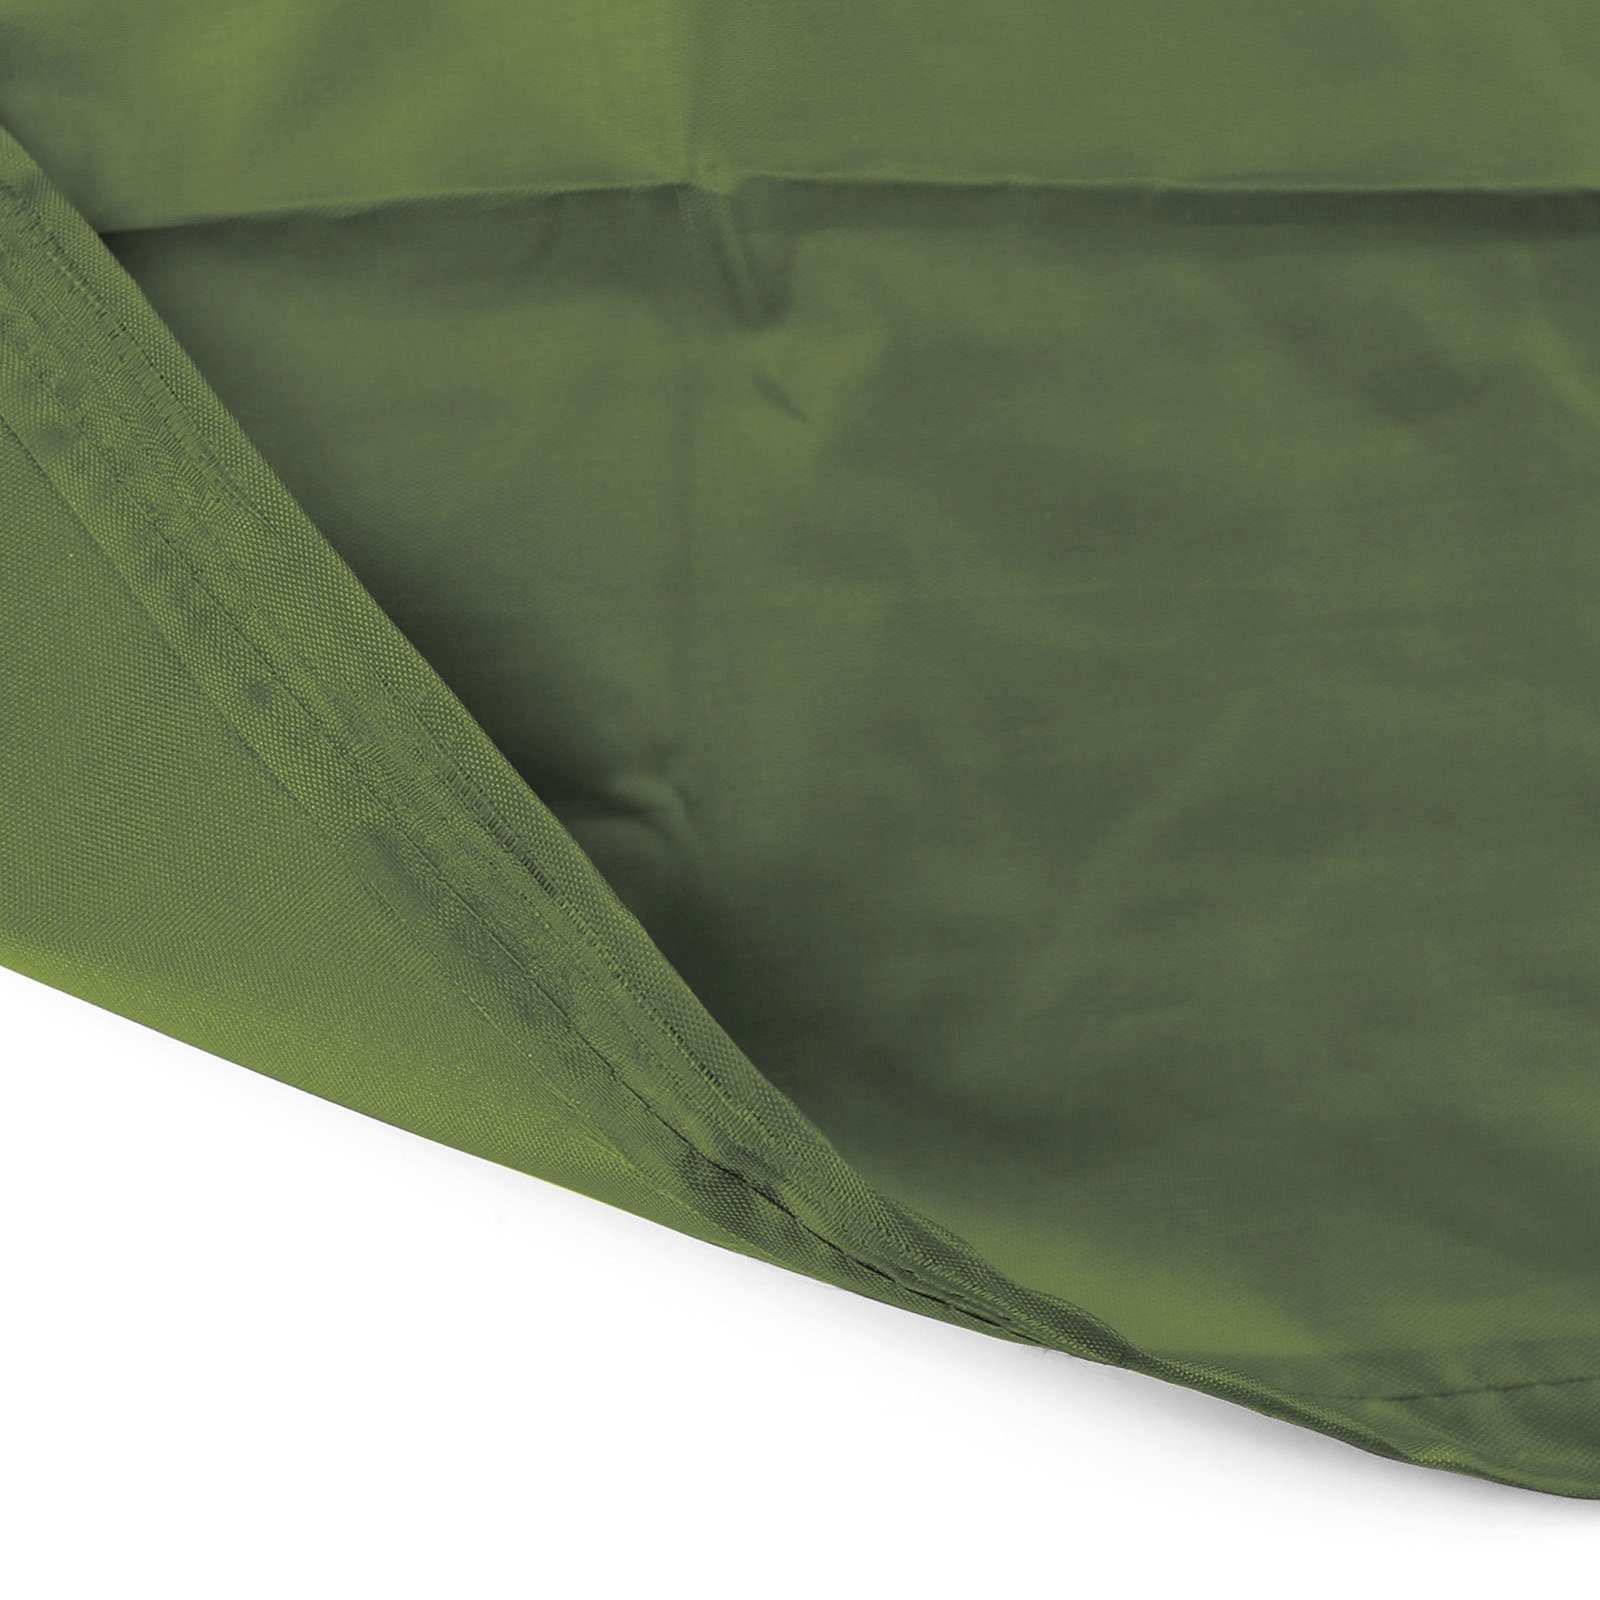 Hängesessel Premium Cover RAMROXX Hängesessel Schutzhülle 190x100cm für Schutzabdeckung Grün